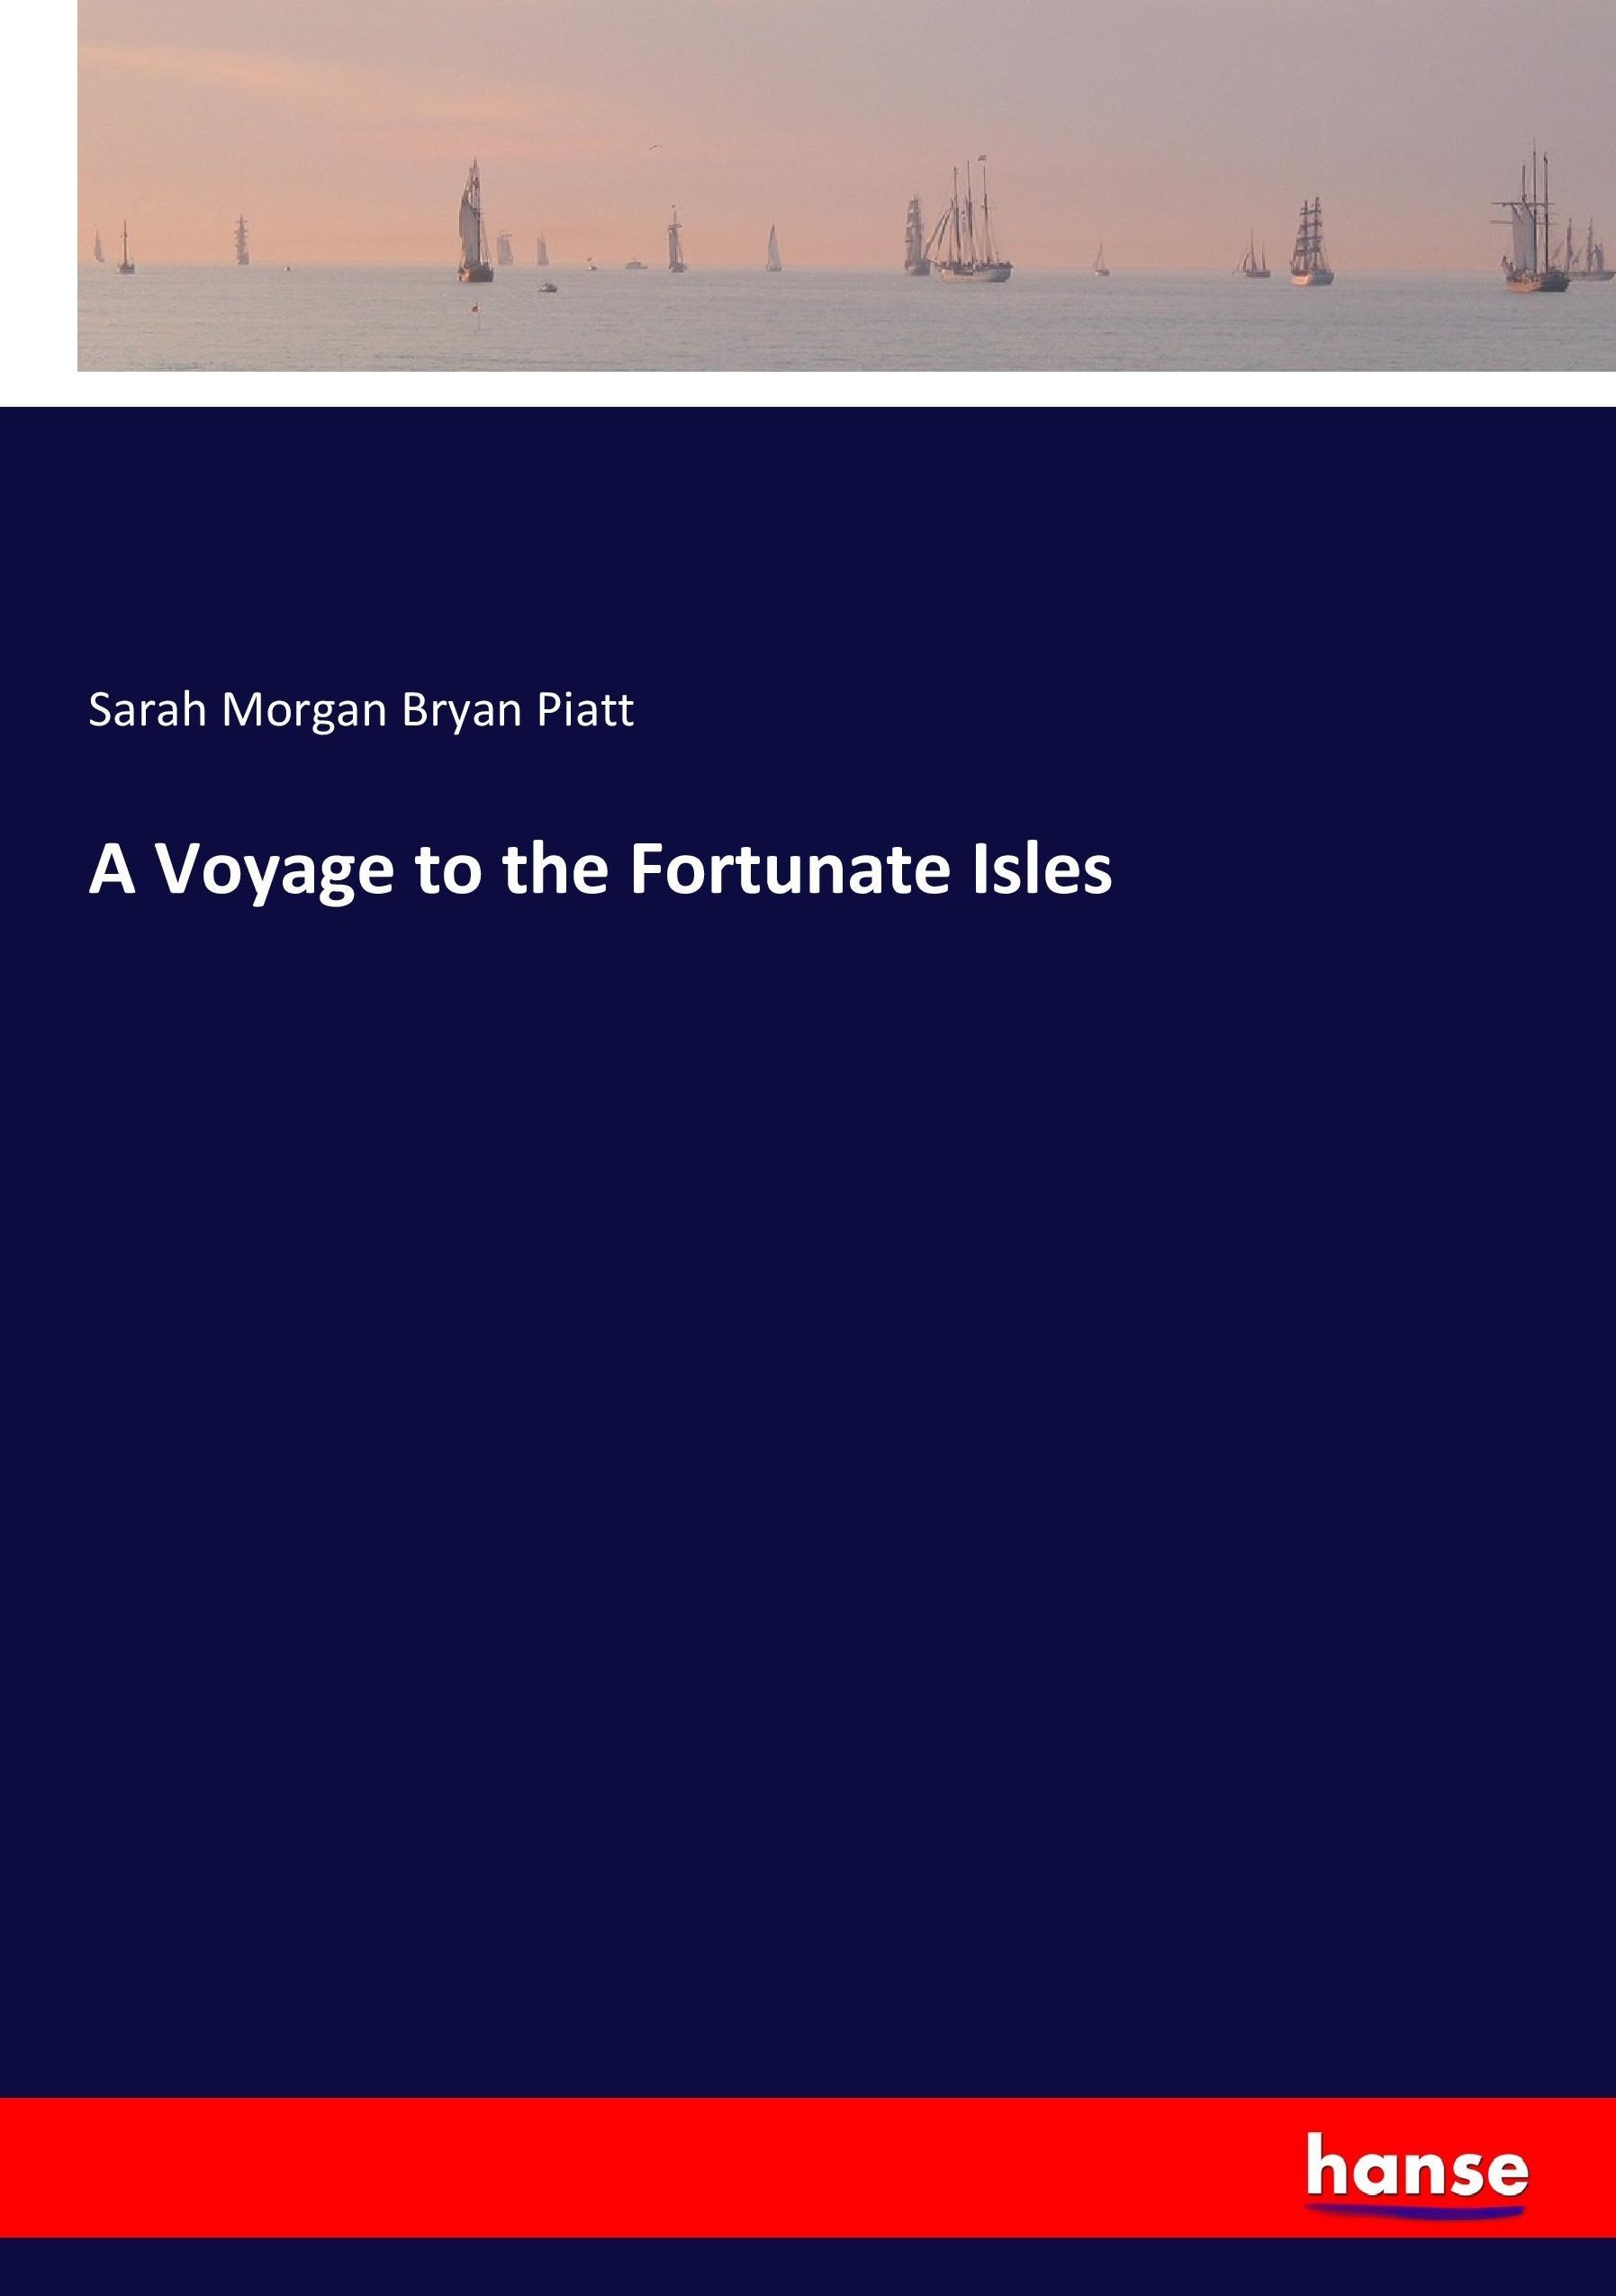 A Voyage to the Fortunate Isles - Piatt, Sarah Morgan Bryan